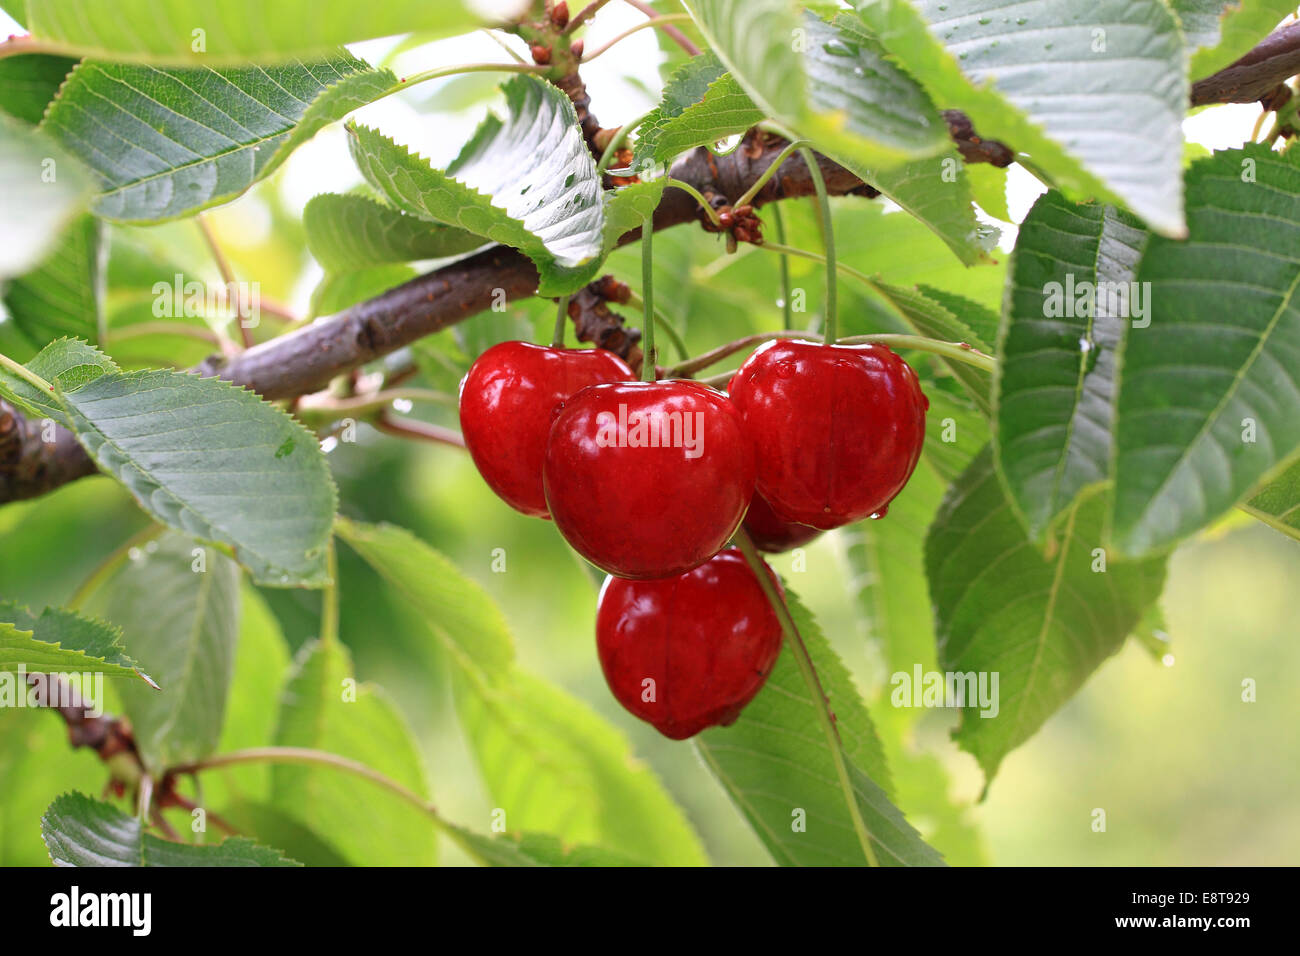 Sweet cherries on the twig, Schneiders Späte Knorpelkirsche variety Stock Photo